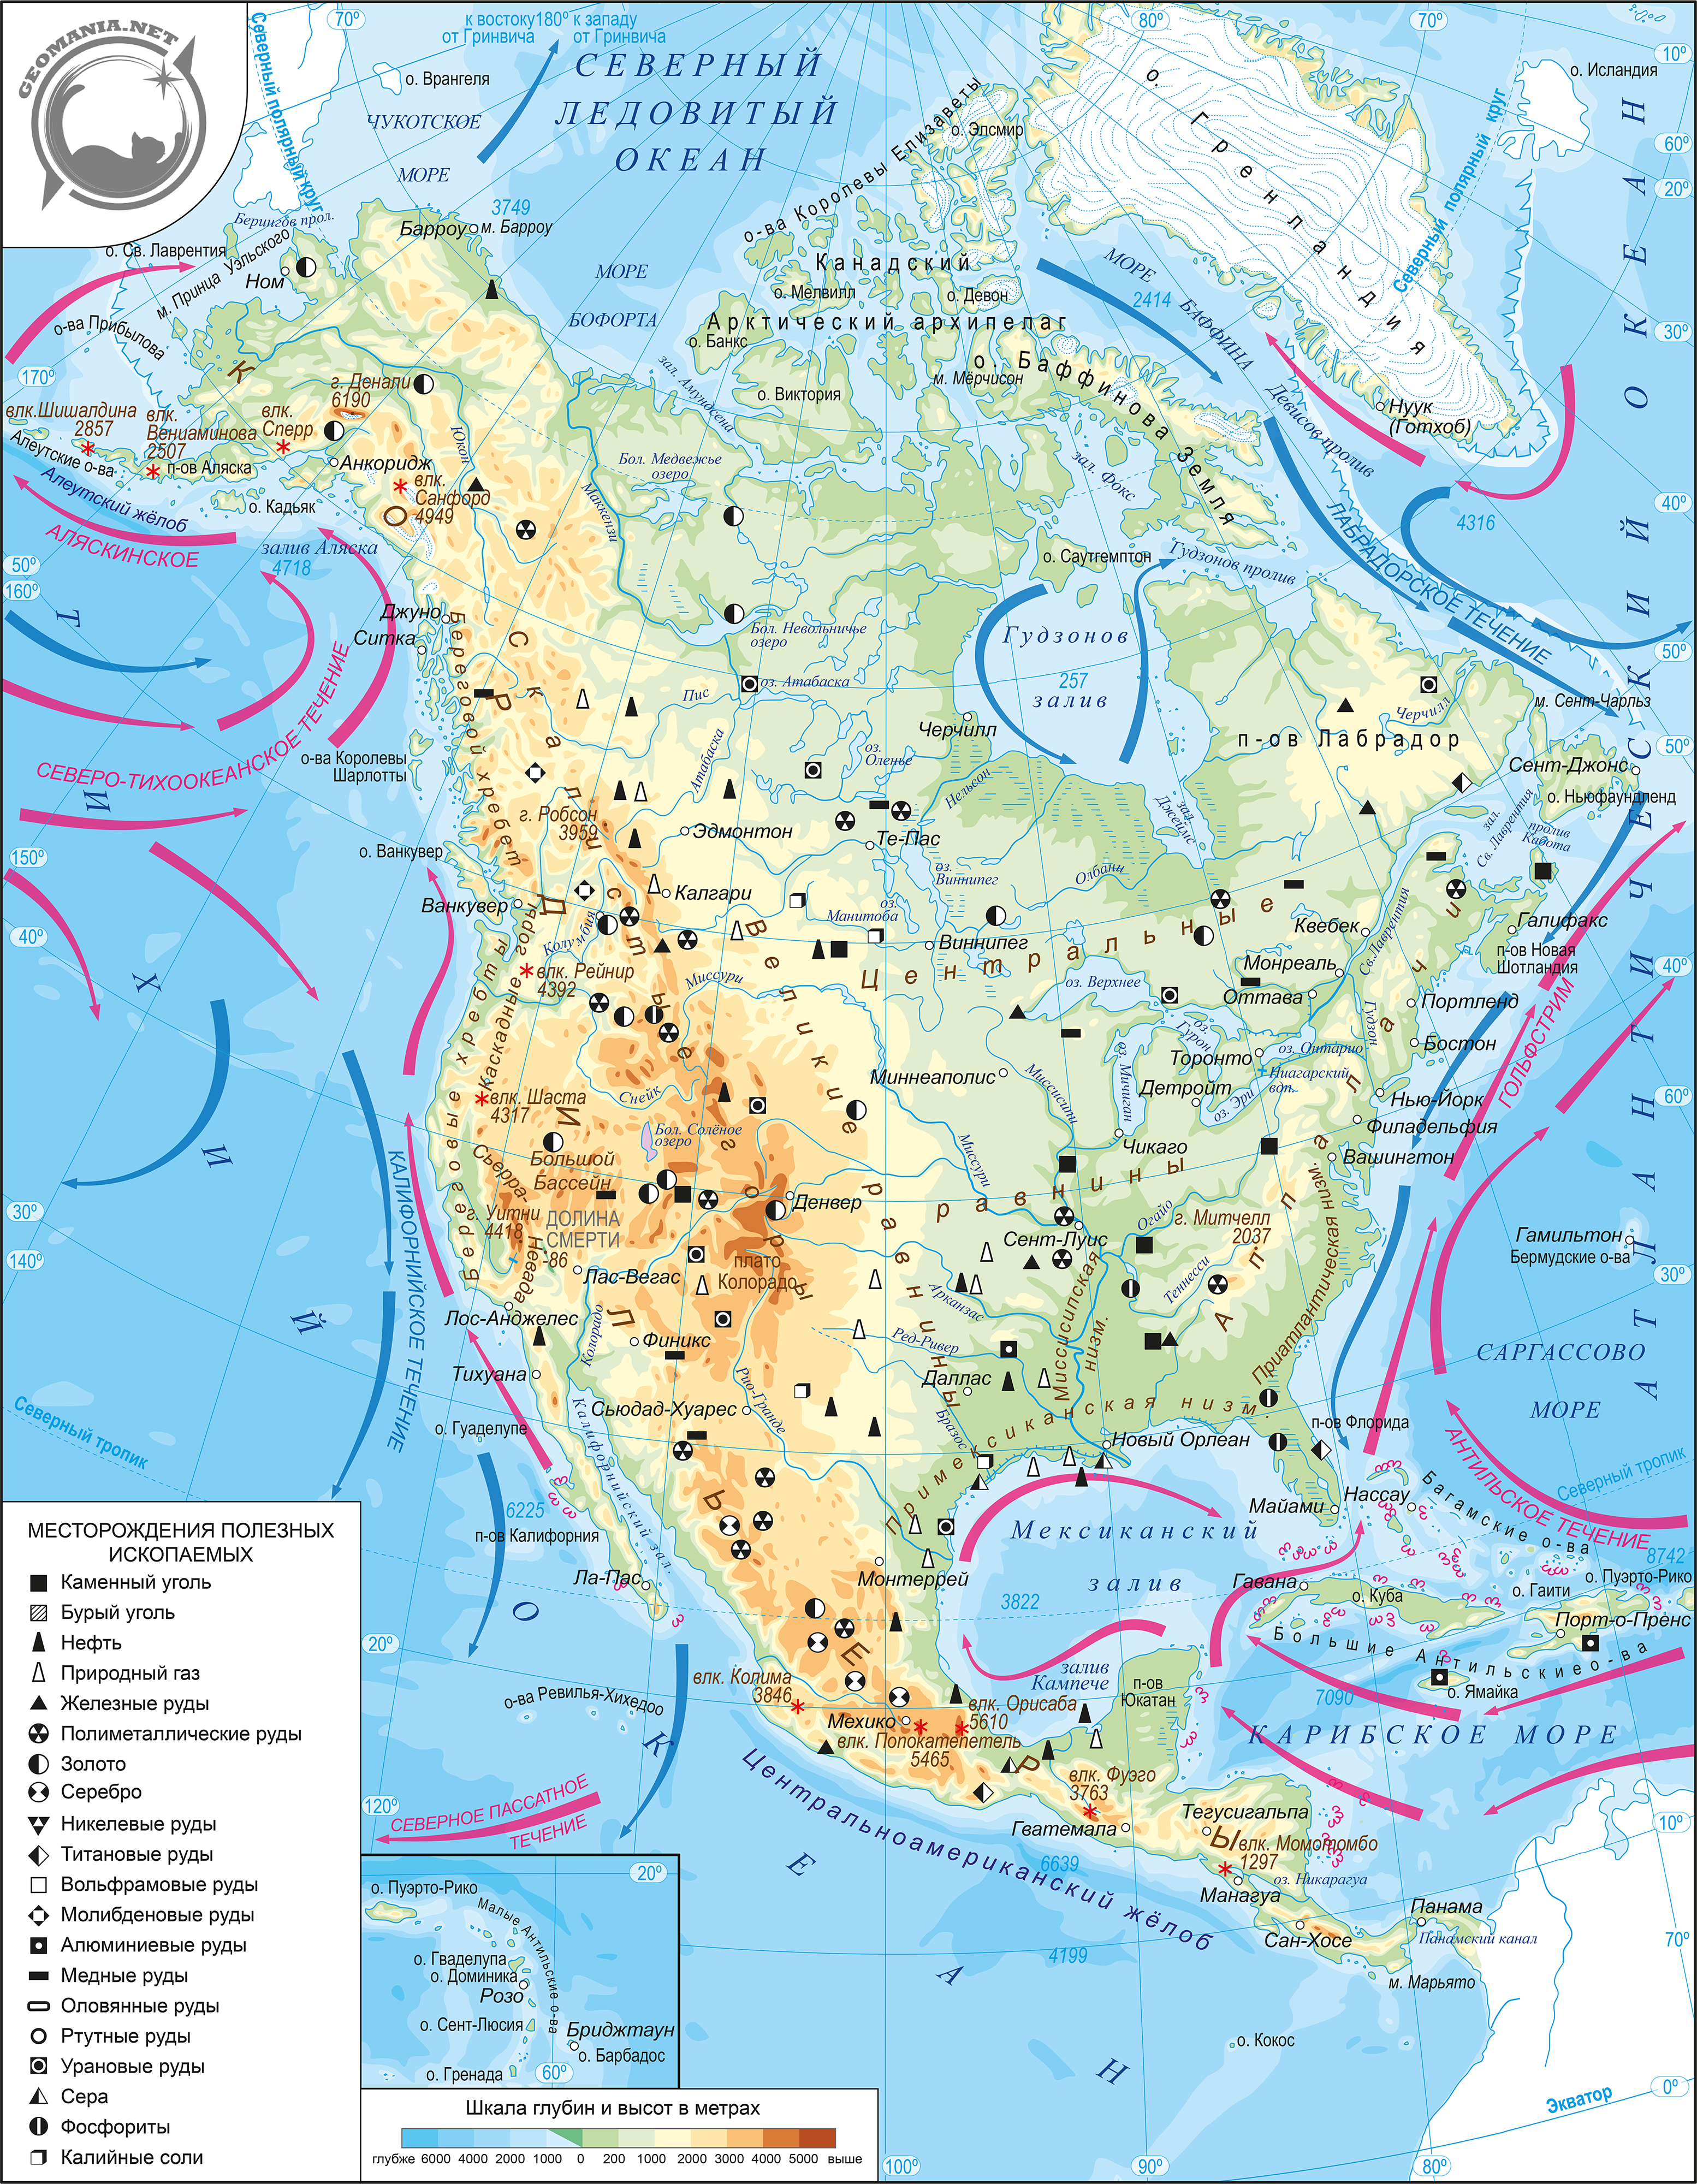 Северная америка географическая карта на русском. Физическая карта Северной Америки атлас. Карта Северной Америки 7 класс география атлас. География атлас 7 класс физическая Северная Америка. Карта Северной Америки географическая крупная.